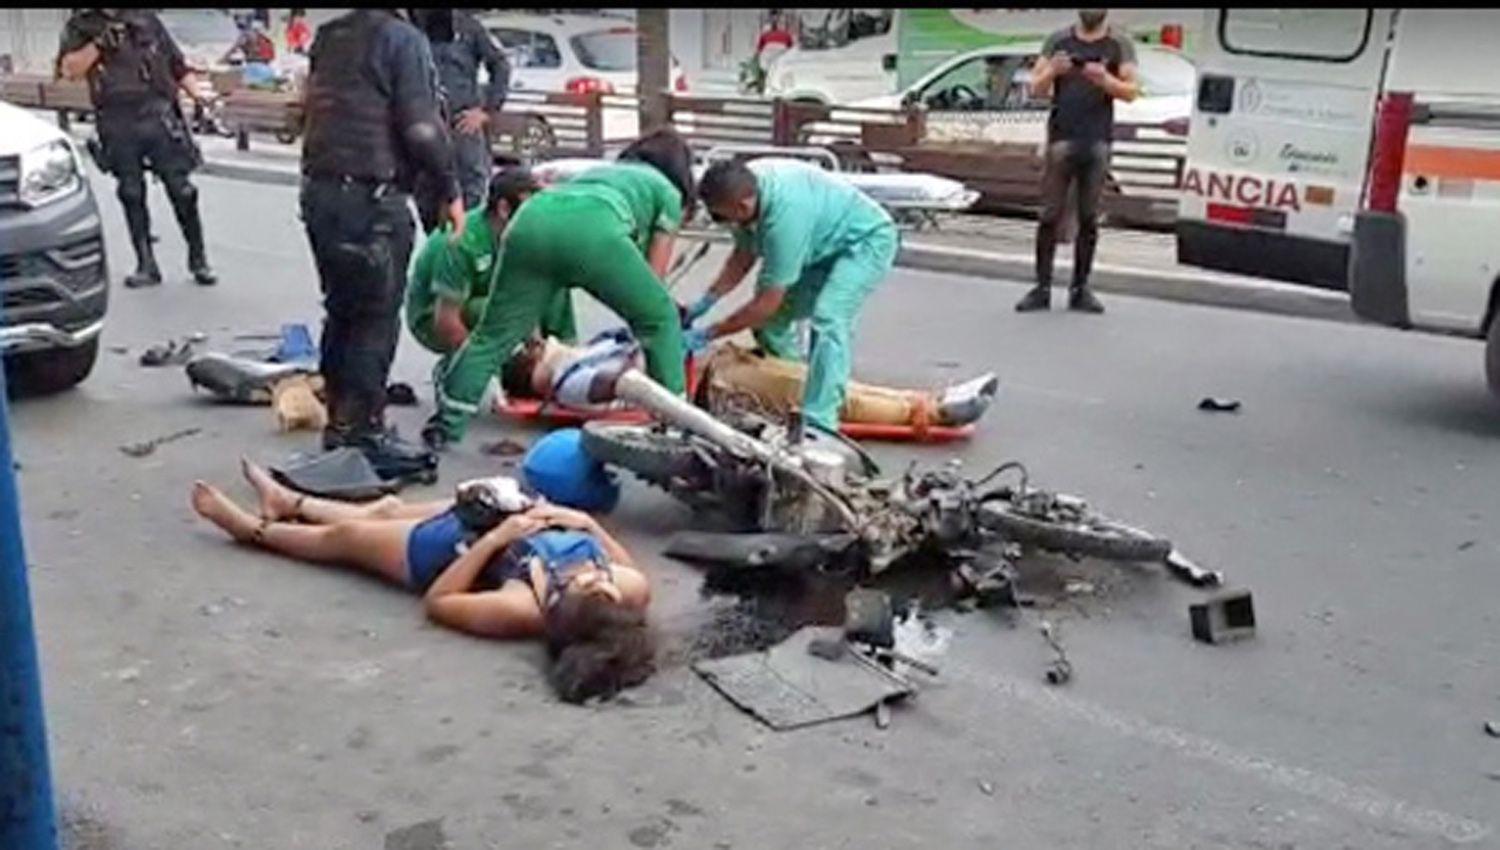 Pericia clave para definir responsables en el accidente fatal en plena Avda Belgrano